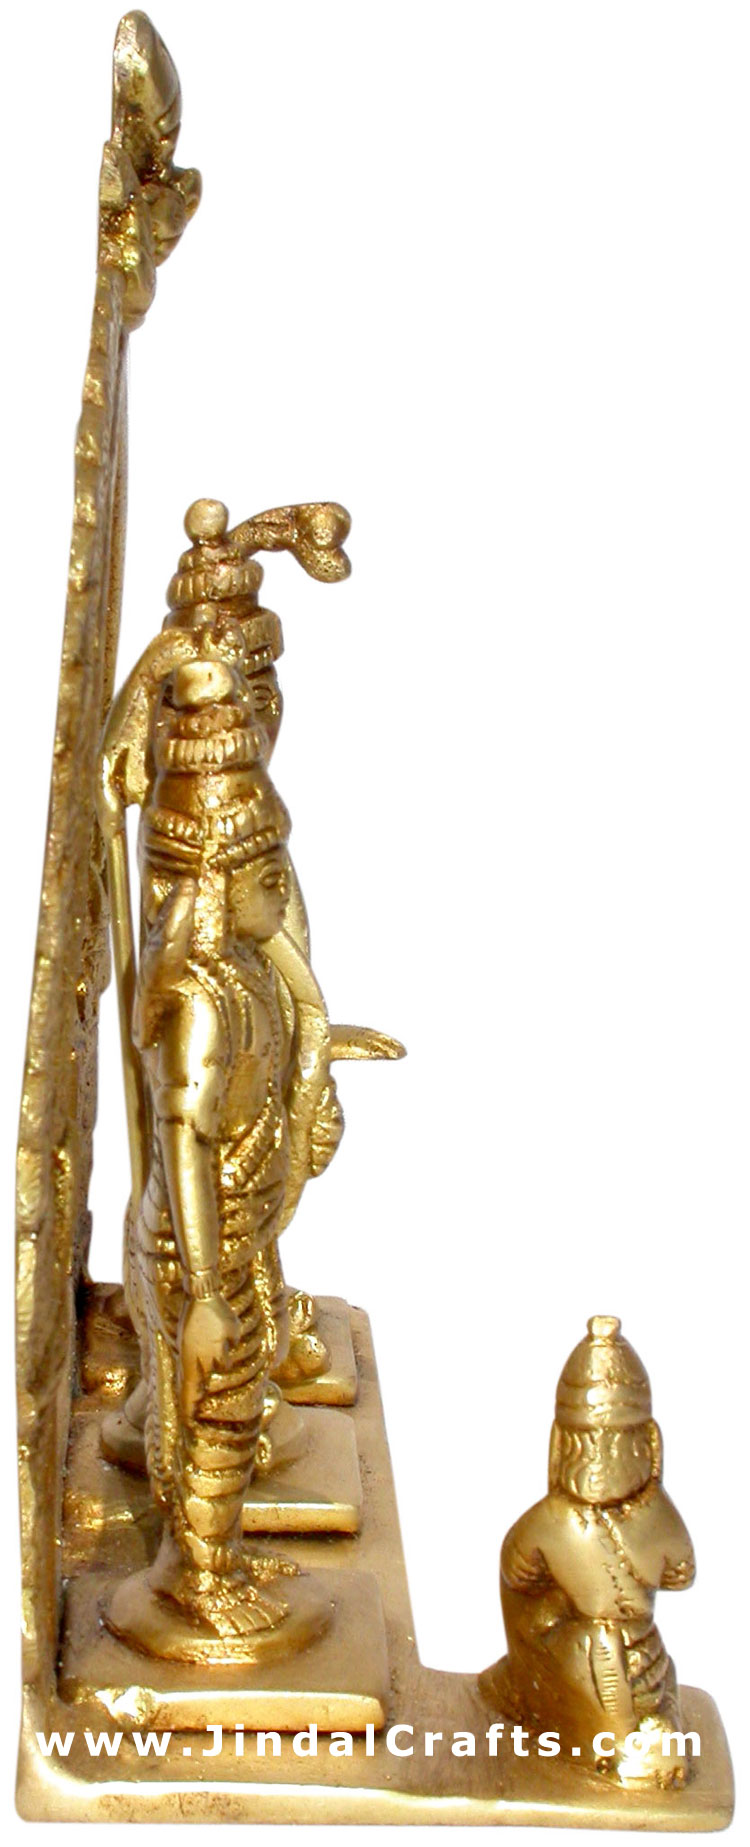 Hindu God Ram Darbar Statue Sita Laxman Hanumaan India